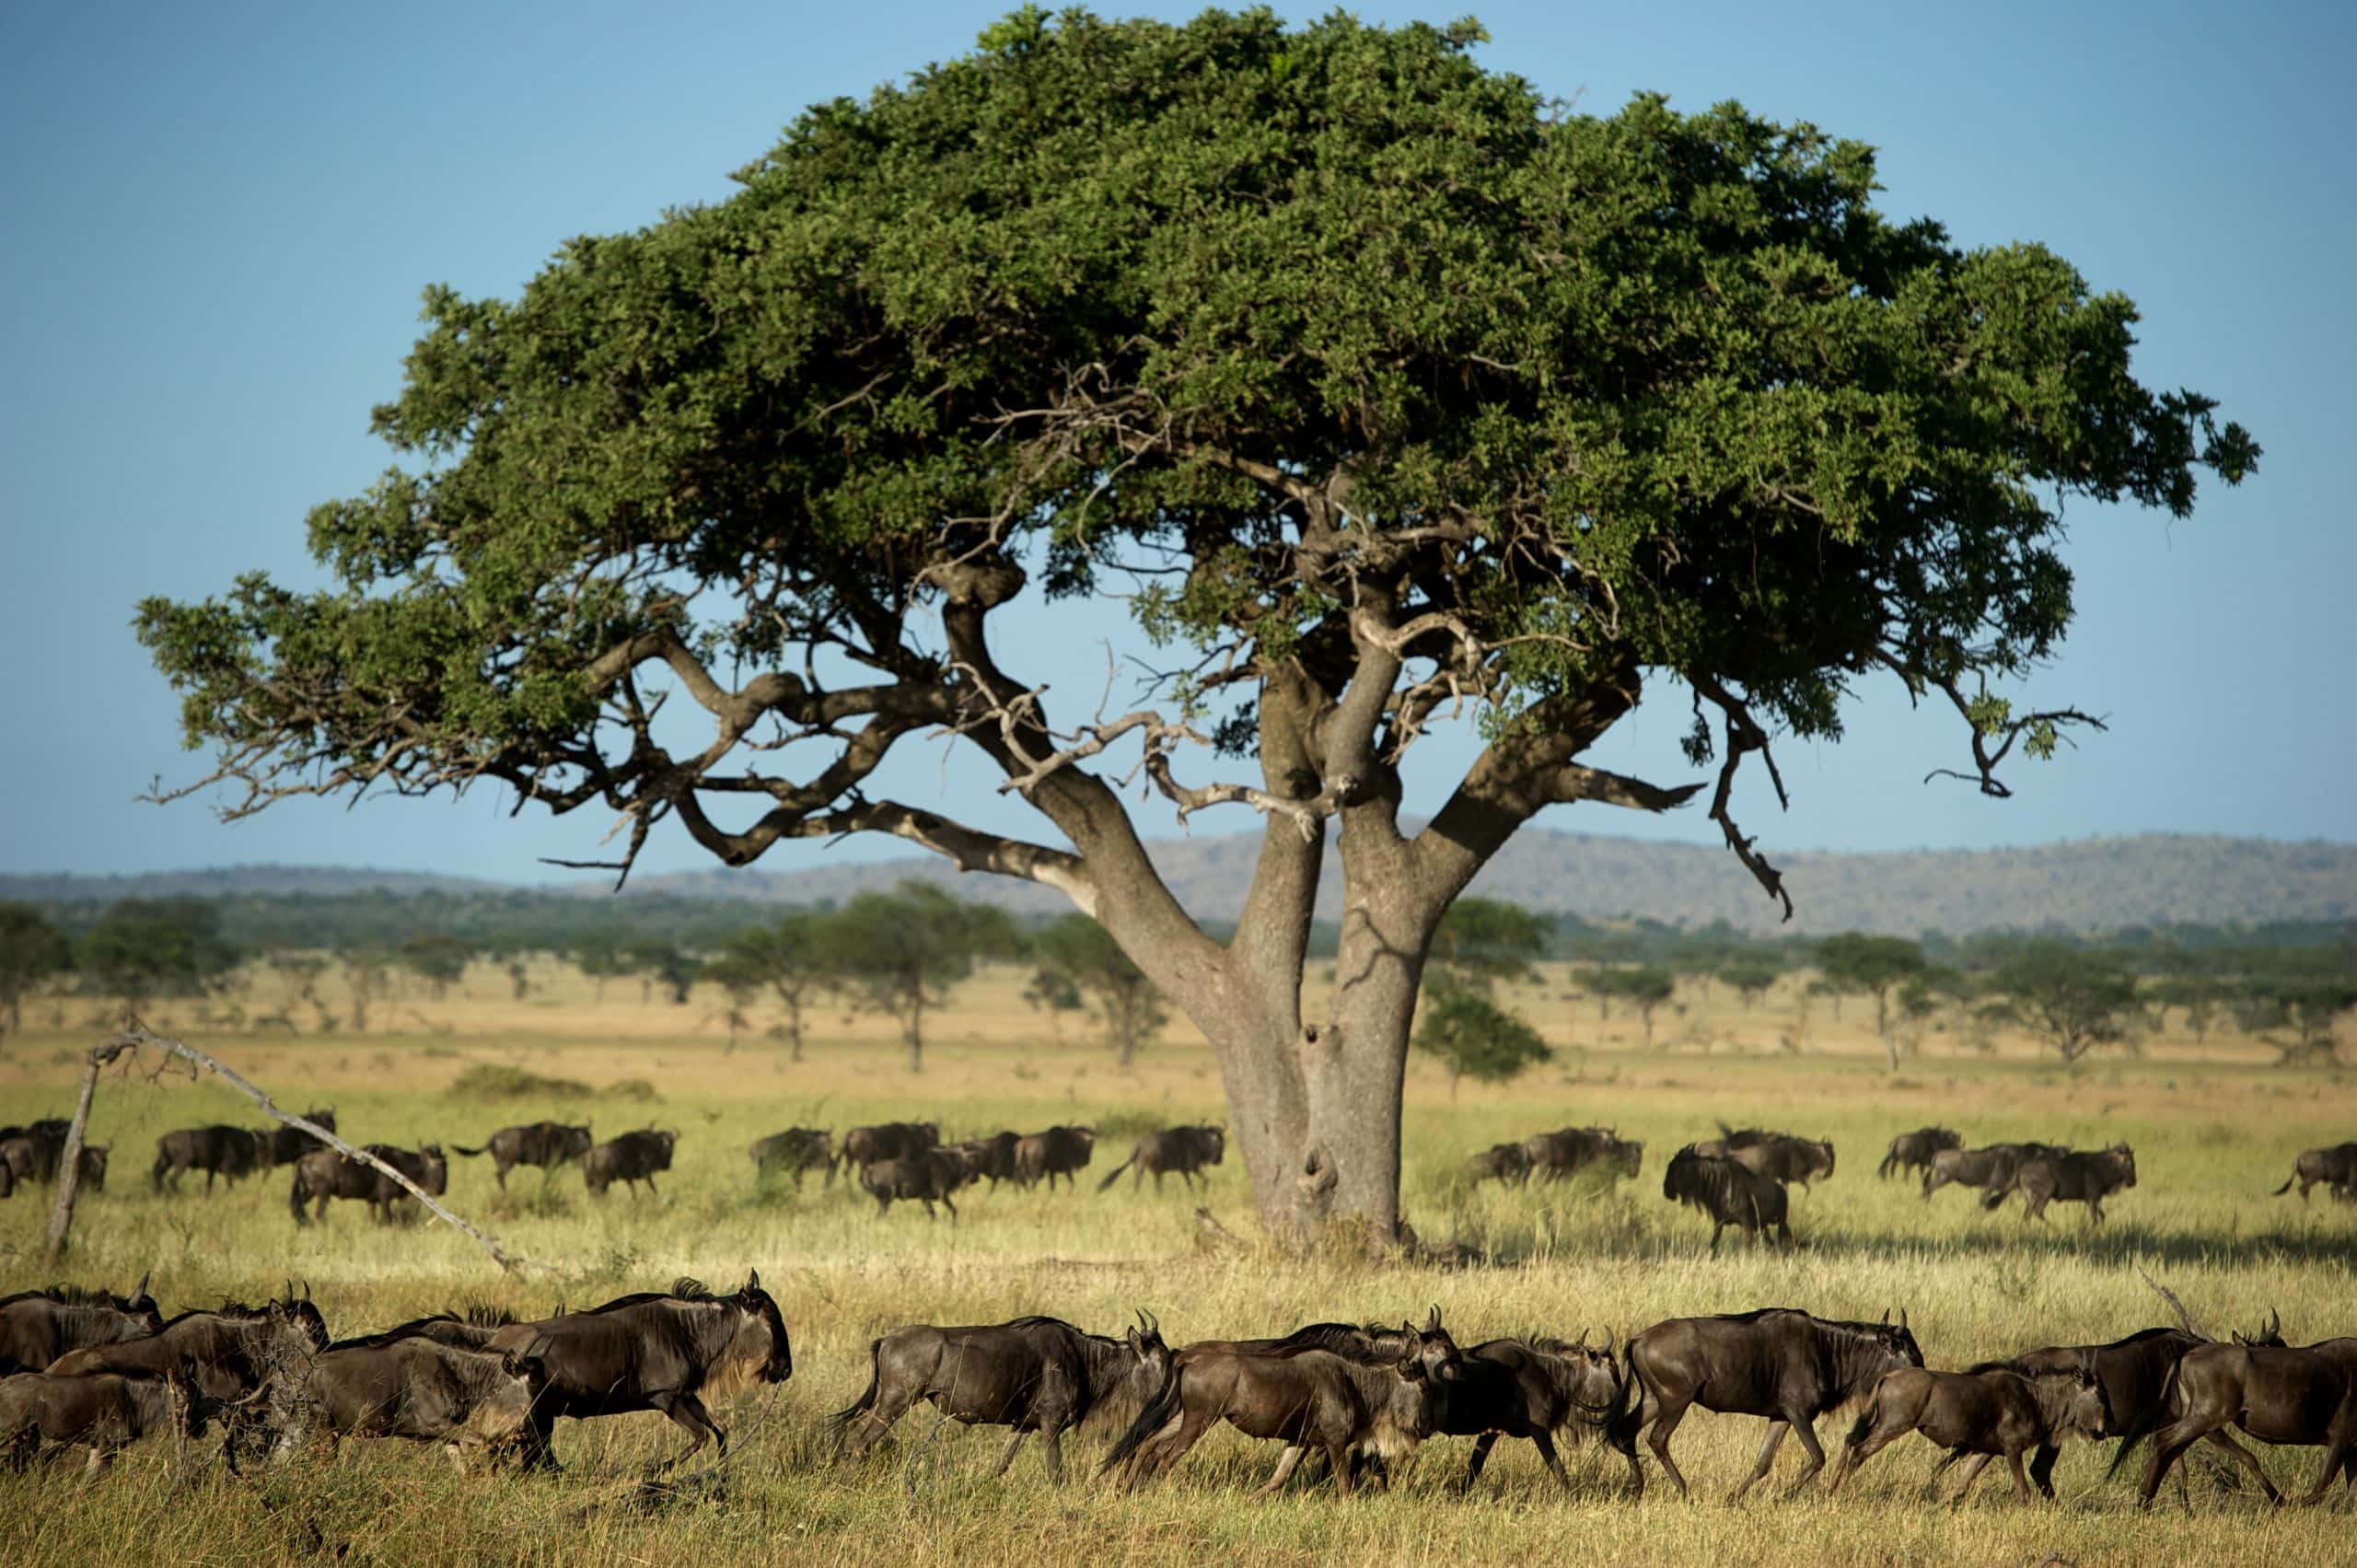 wildebeest running in the grasslands